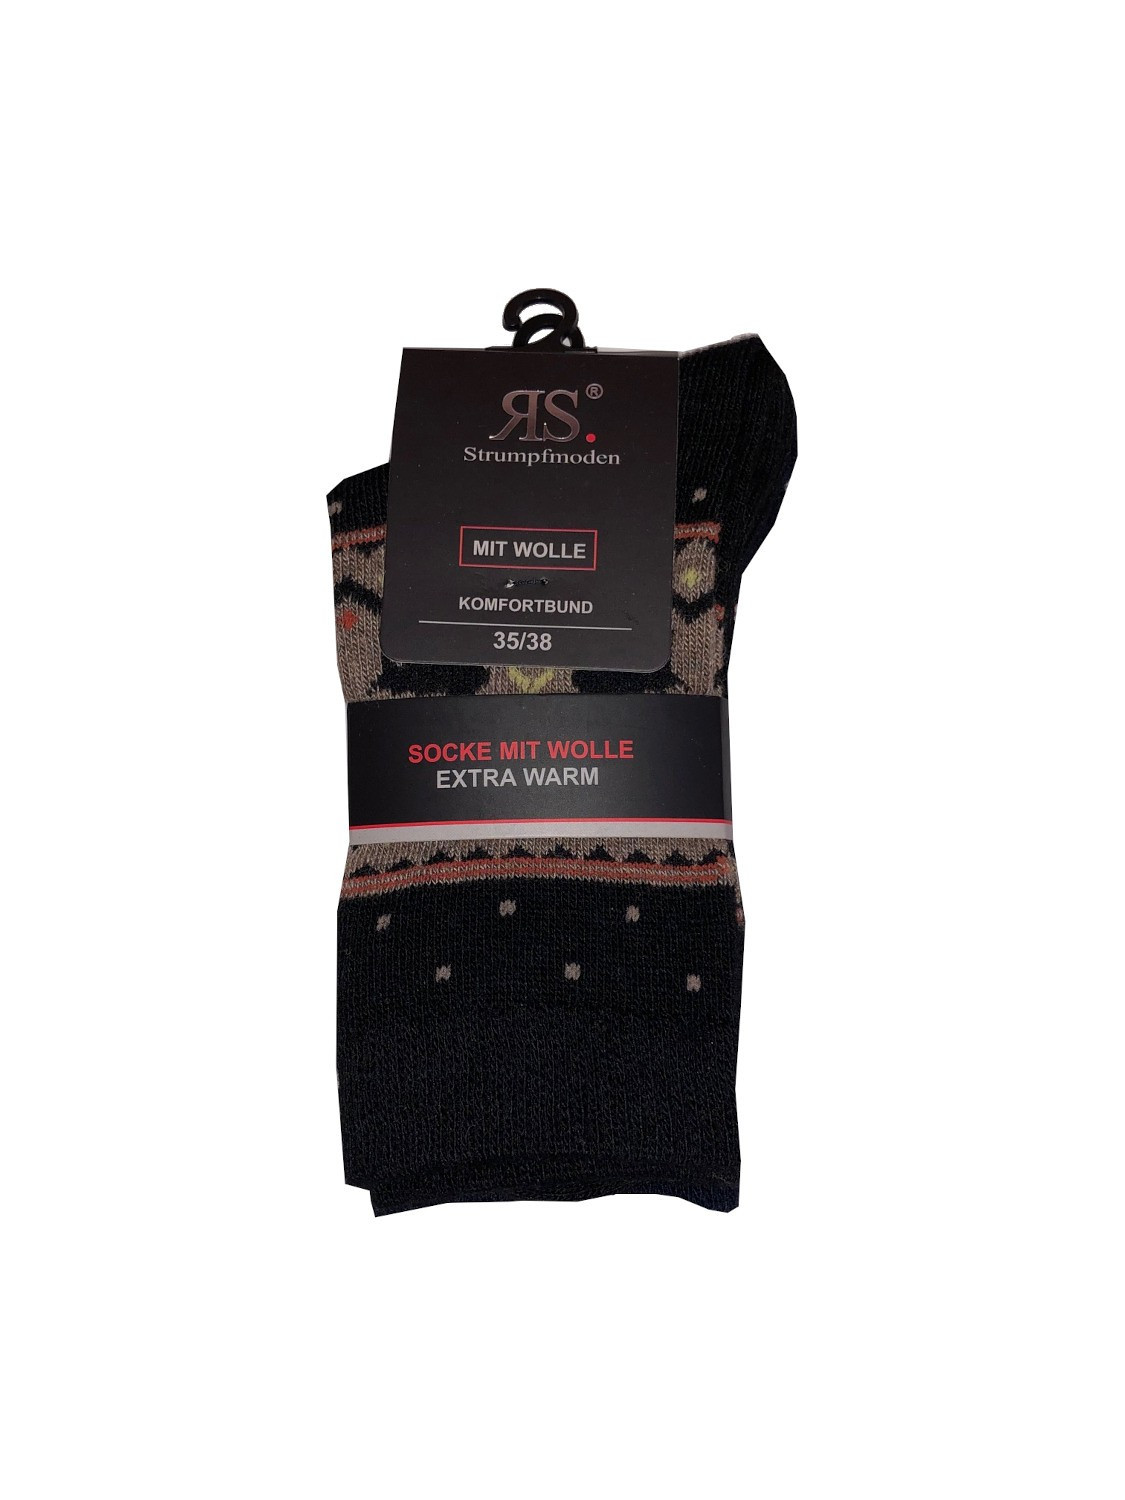 Ponožky RiSocks 43356 Mit Wolle Komfortbund vzor 35-46 A'2 černo-béžová 35-38